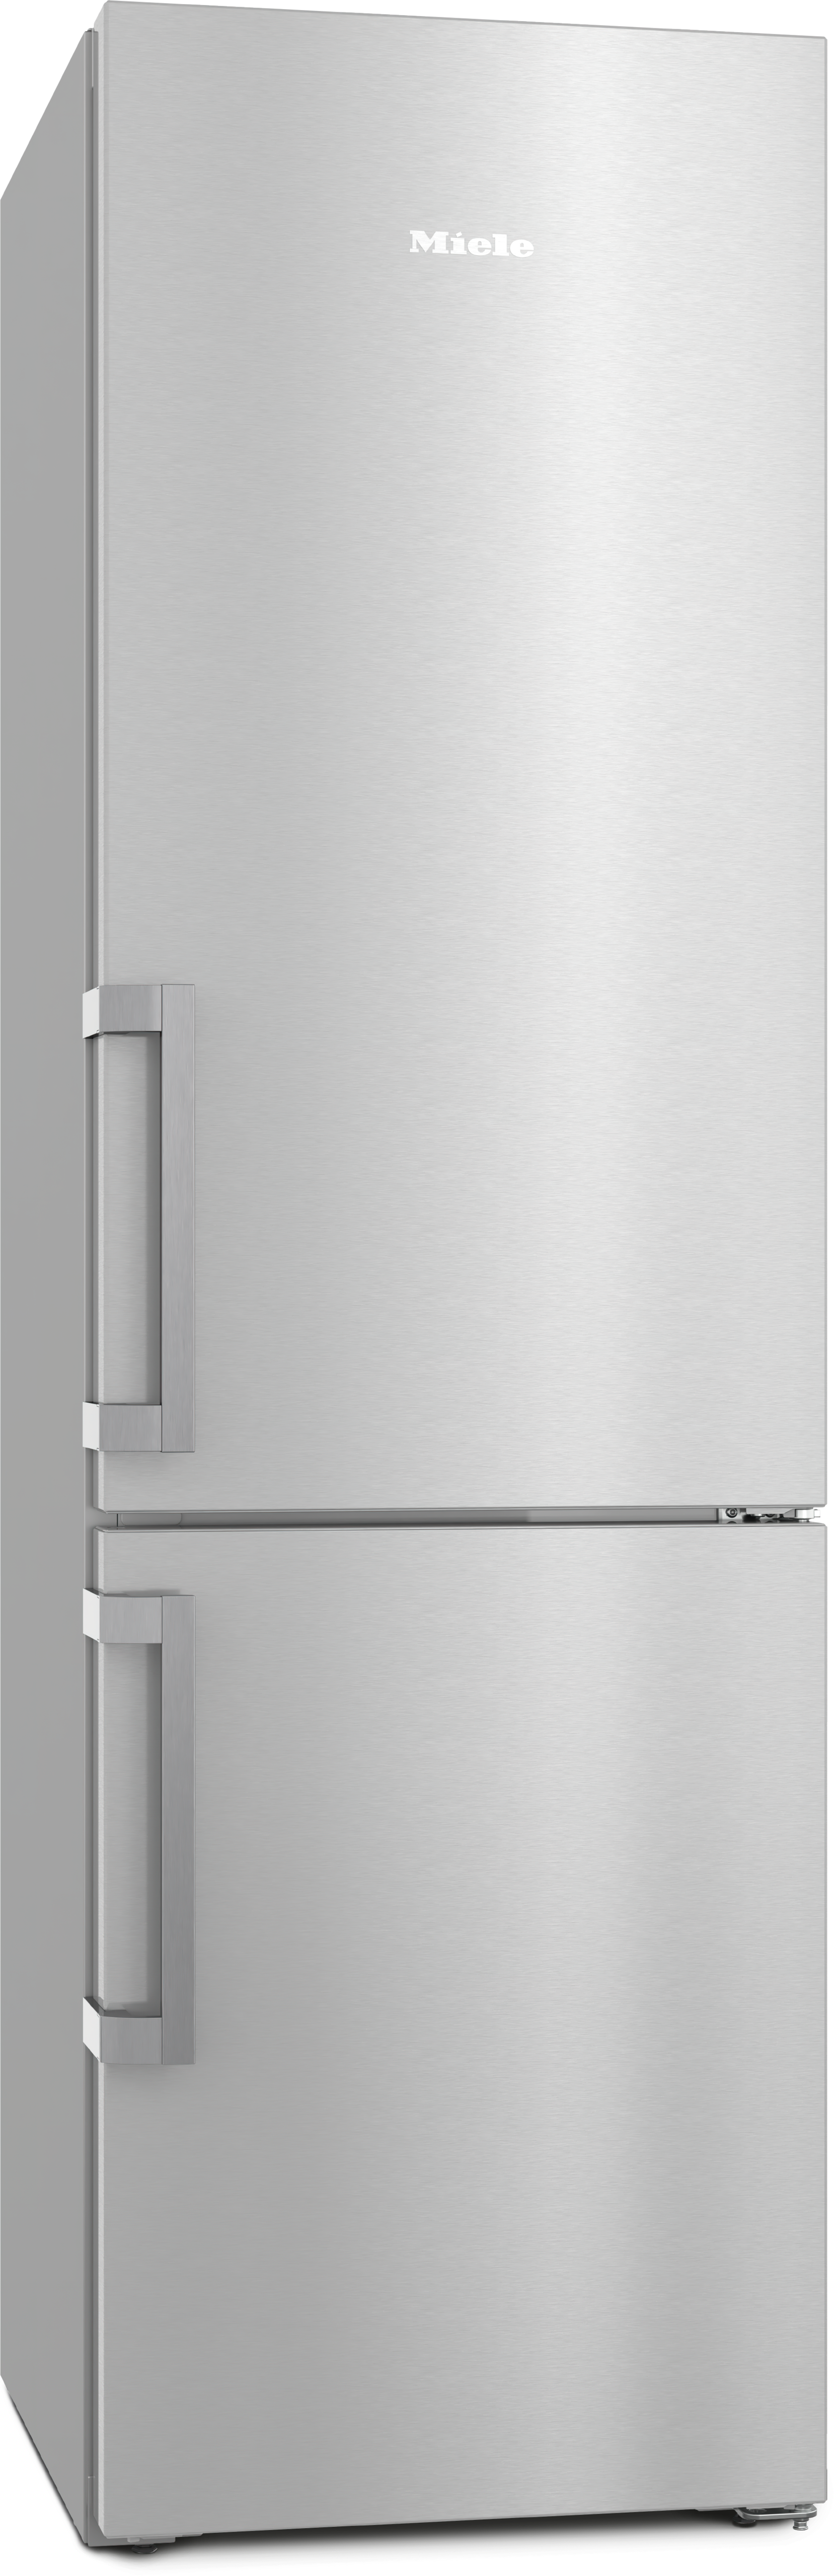 Nuevos frigoríficos Bosch, análisis de los mejores modelos - Milar